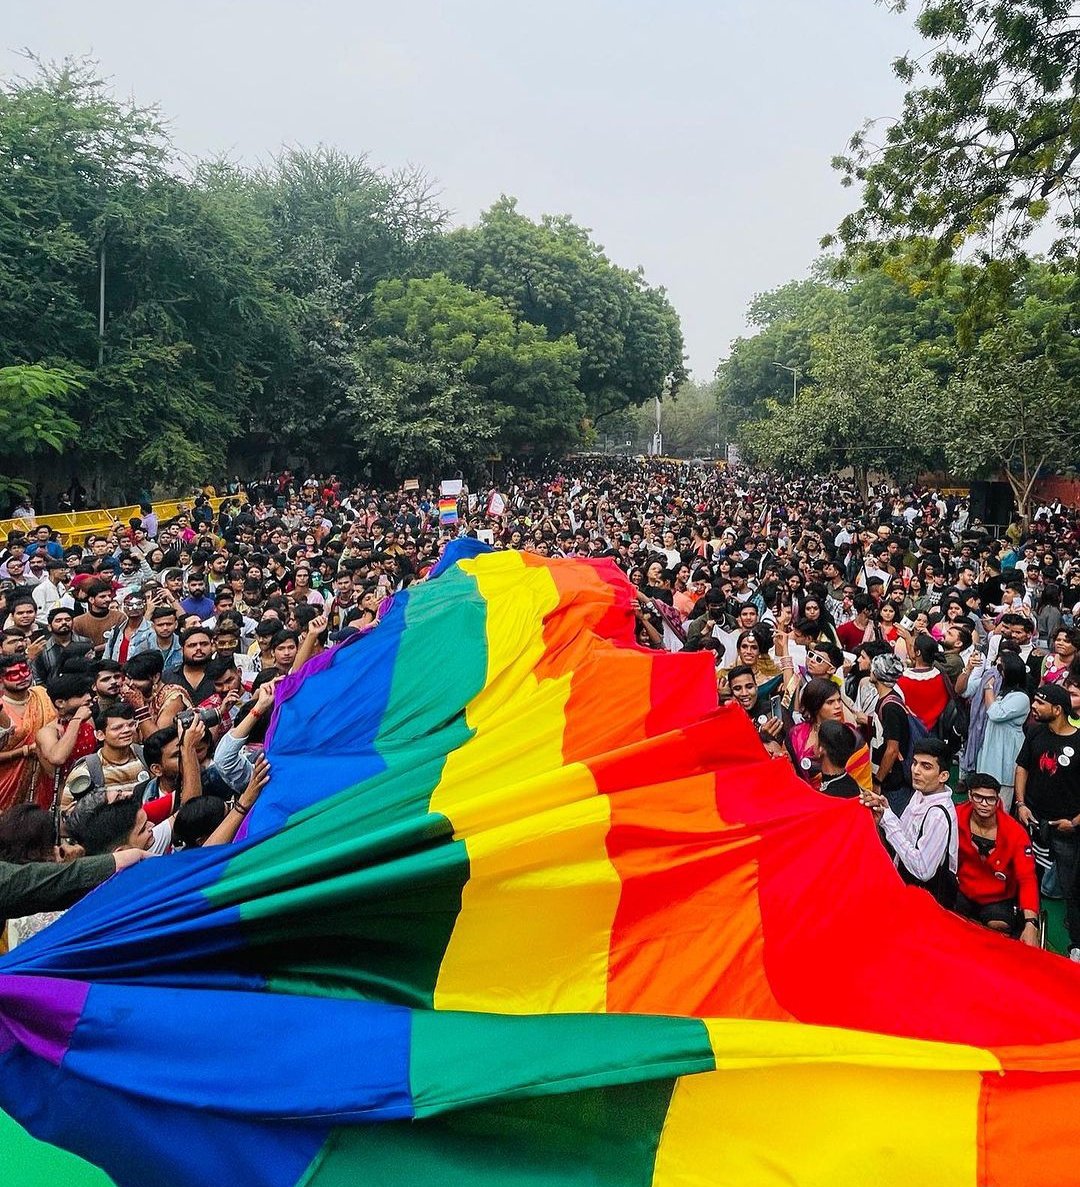 Delhi queer pride
@delhiqueerpride